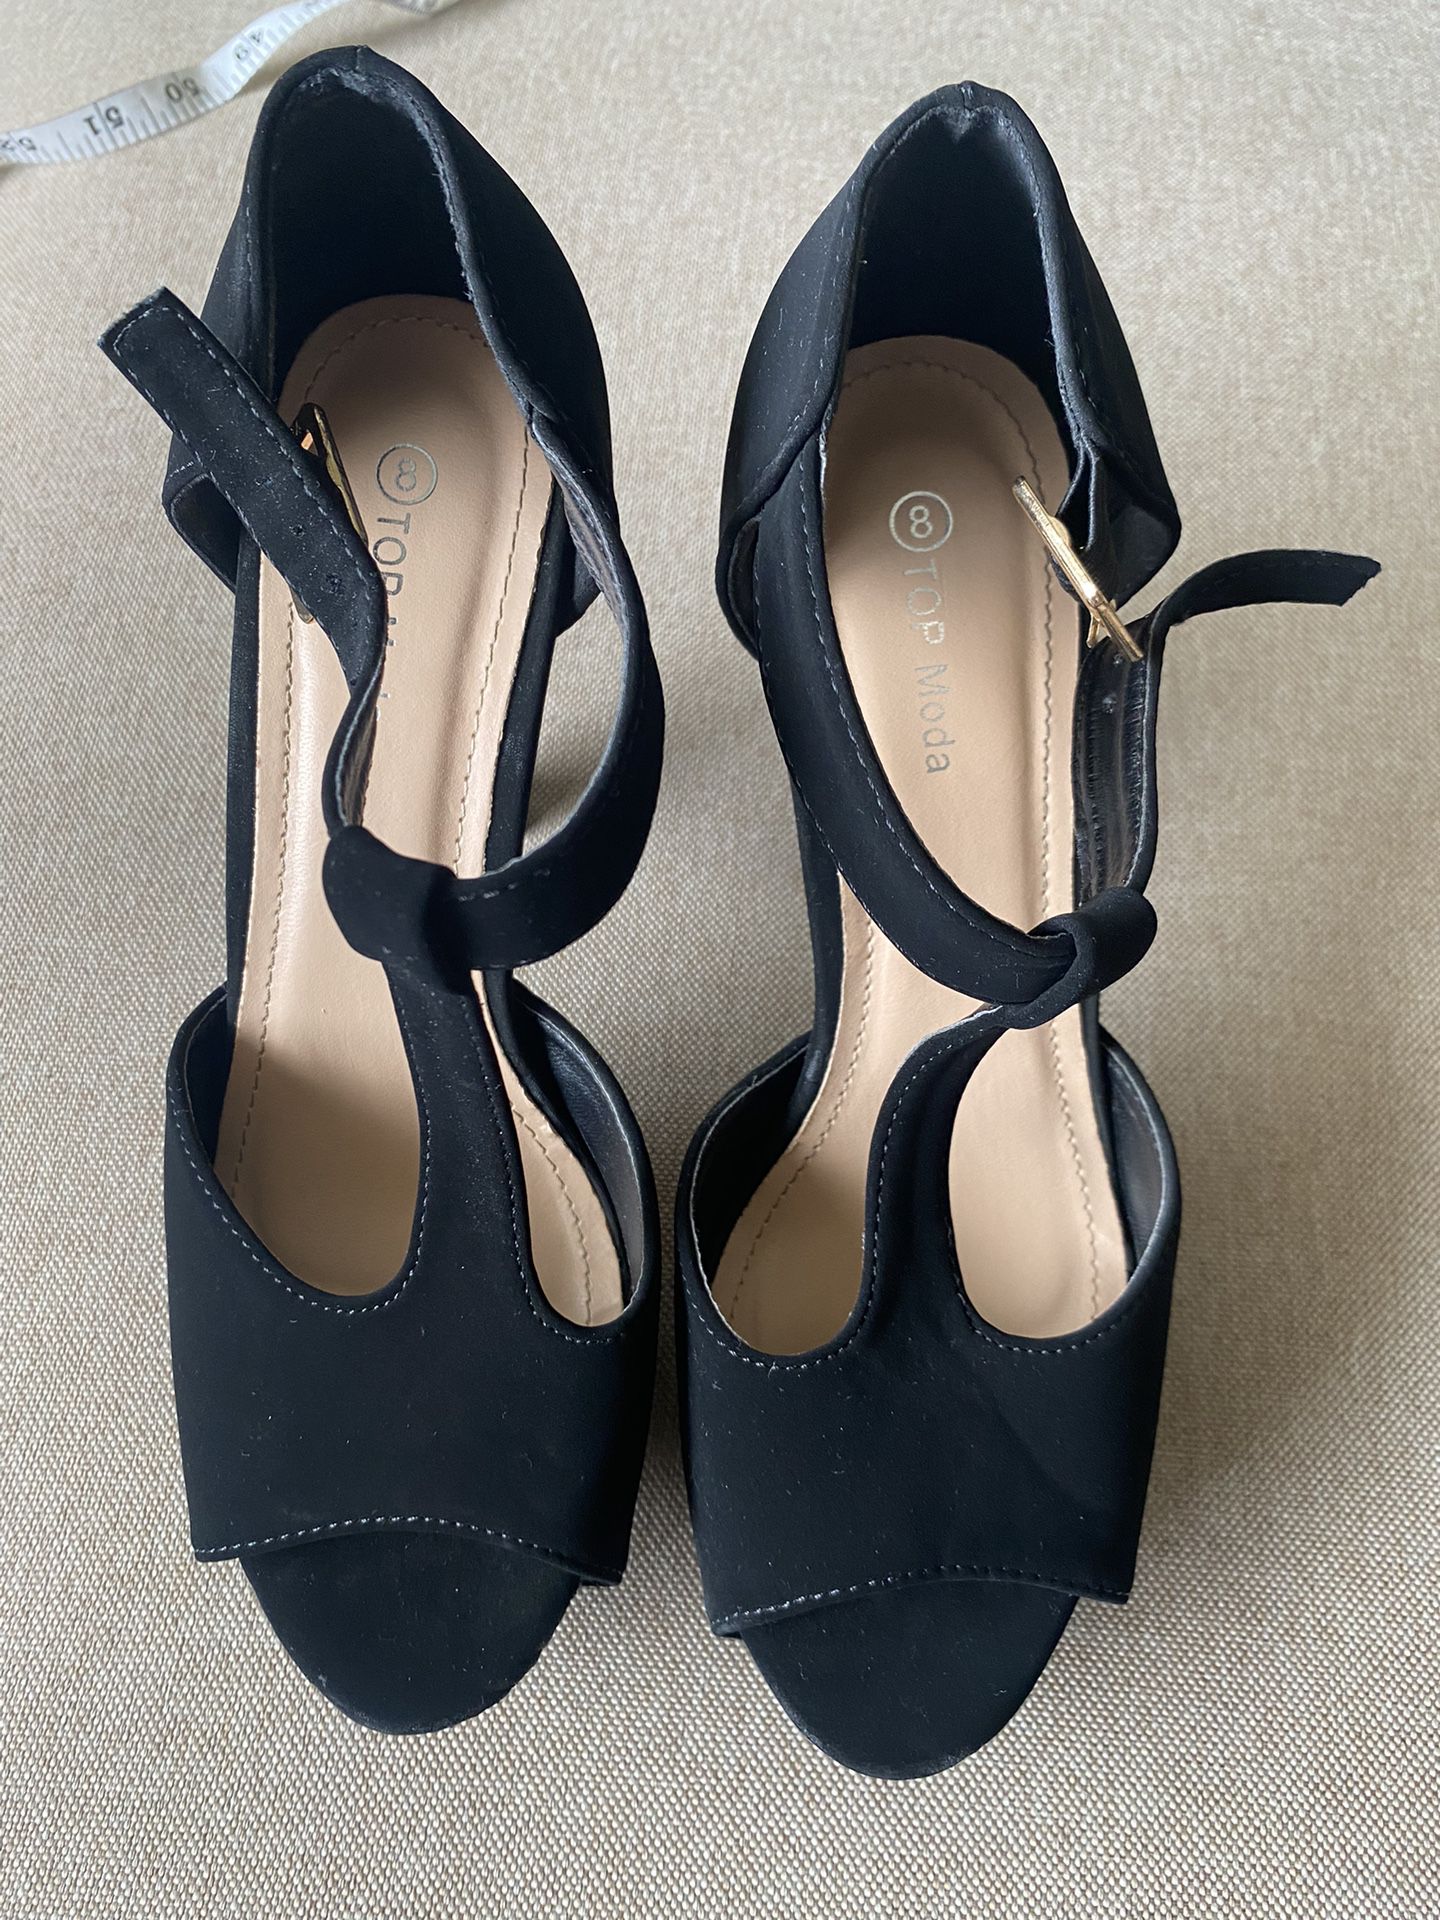 top model platform sandals high heels size 8 black